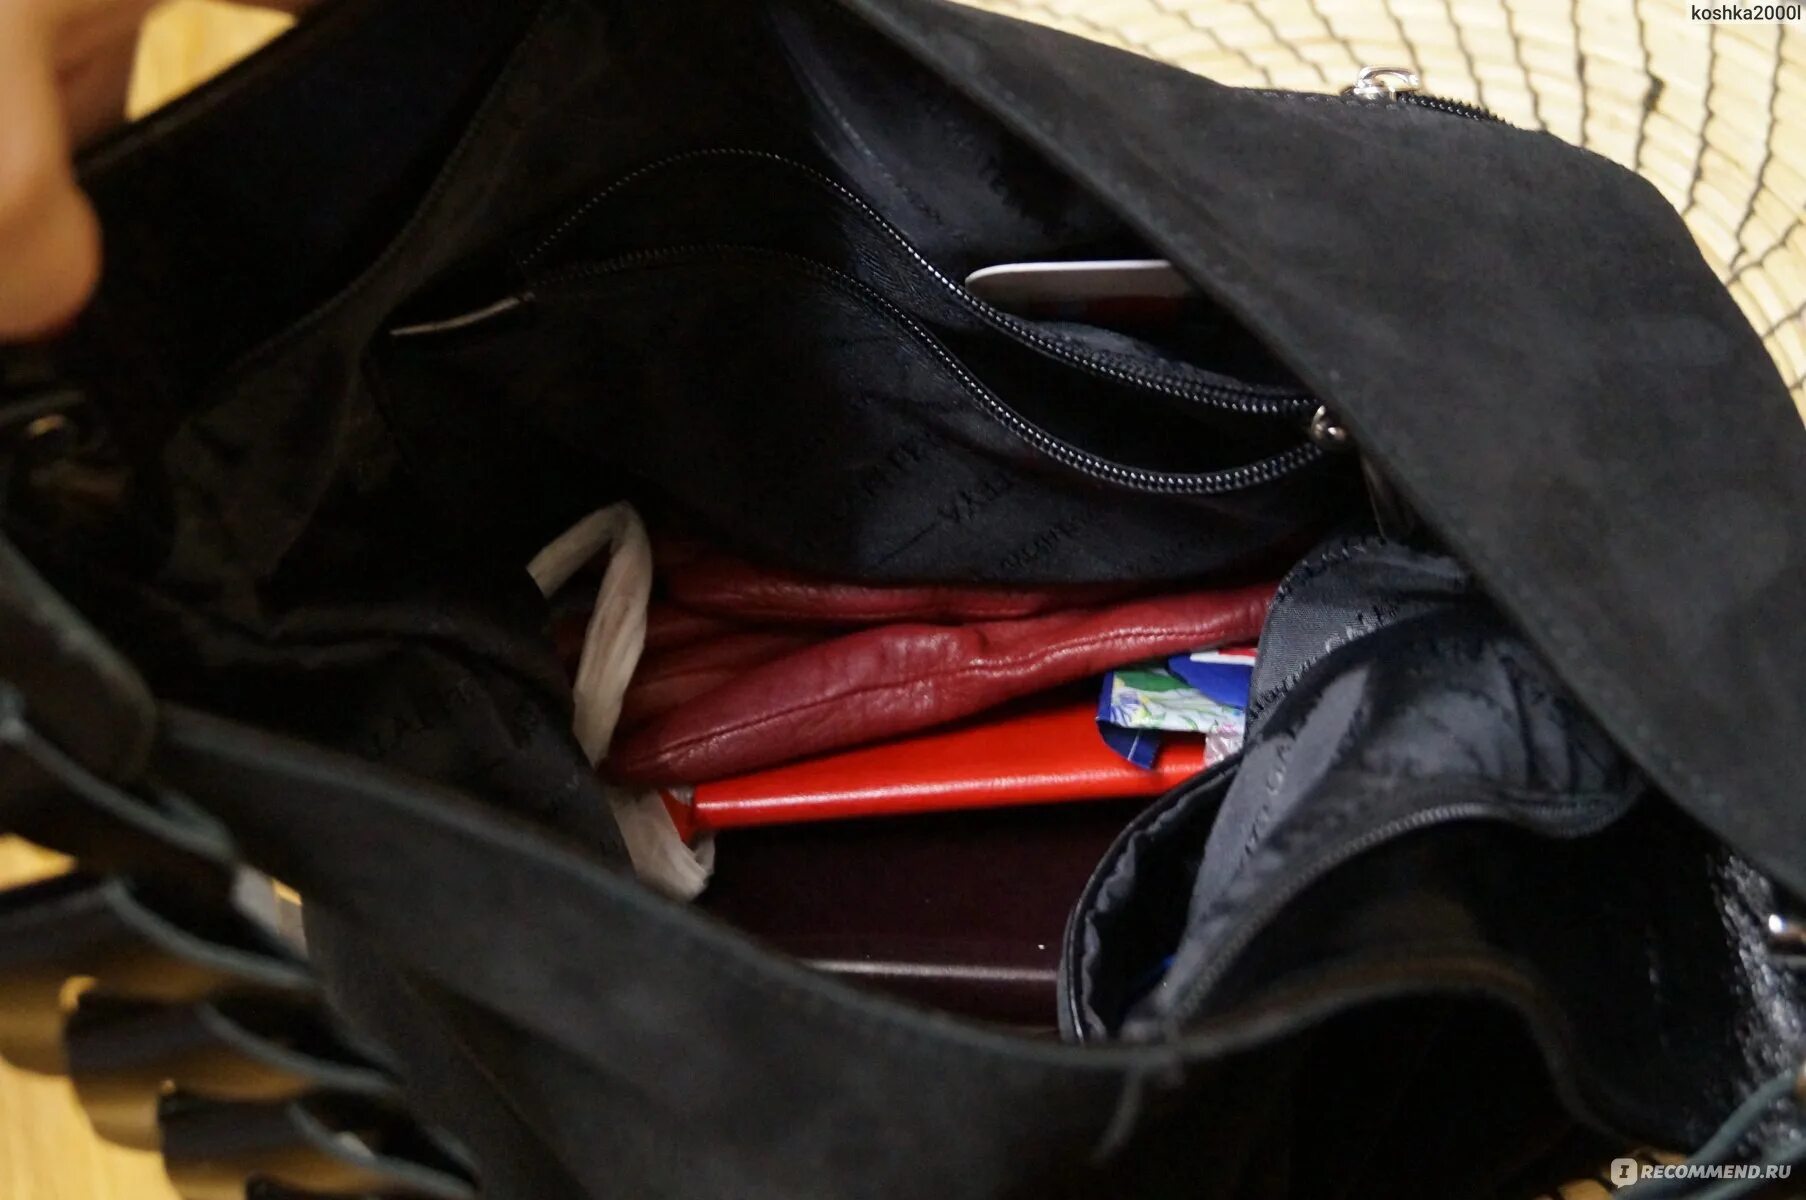 Открыла кошелочку достала сумочку. Девочка вытаскивает из сумки куртку с карманами. Девочка достает из сумки книгу. Открываем кошелочку достала сумочку анекдот.